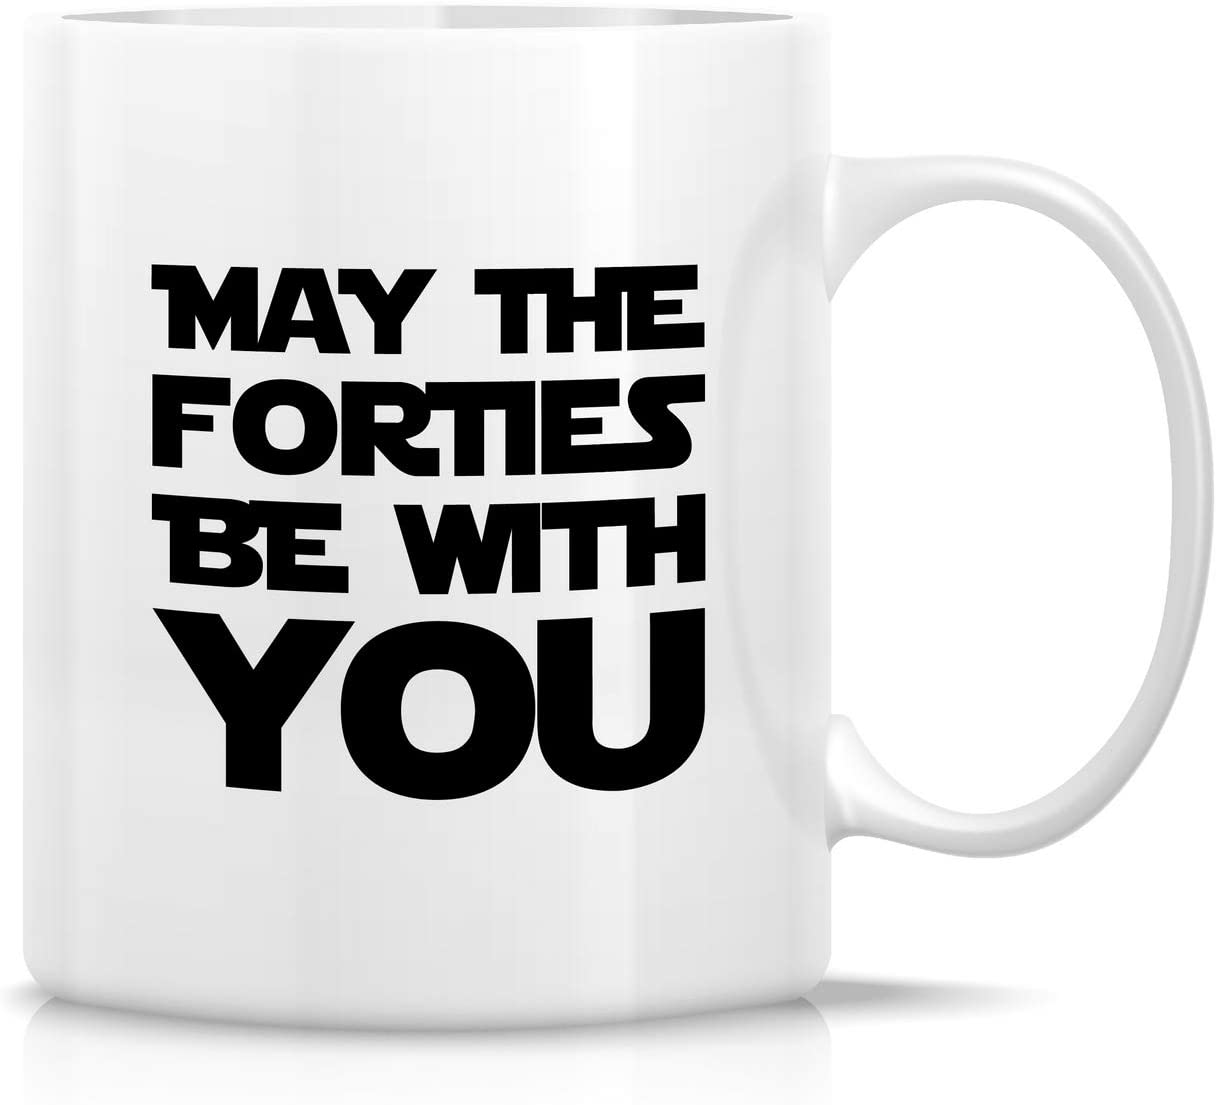 40th-birthday-gift-ideas-mug